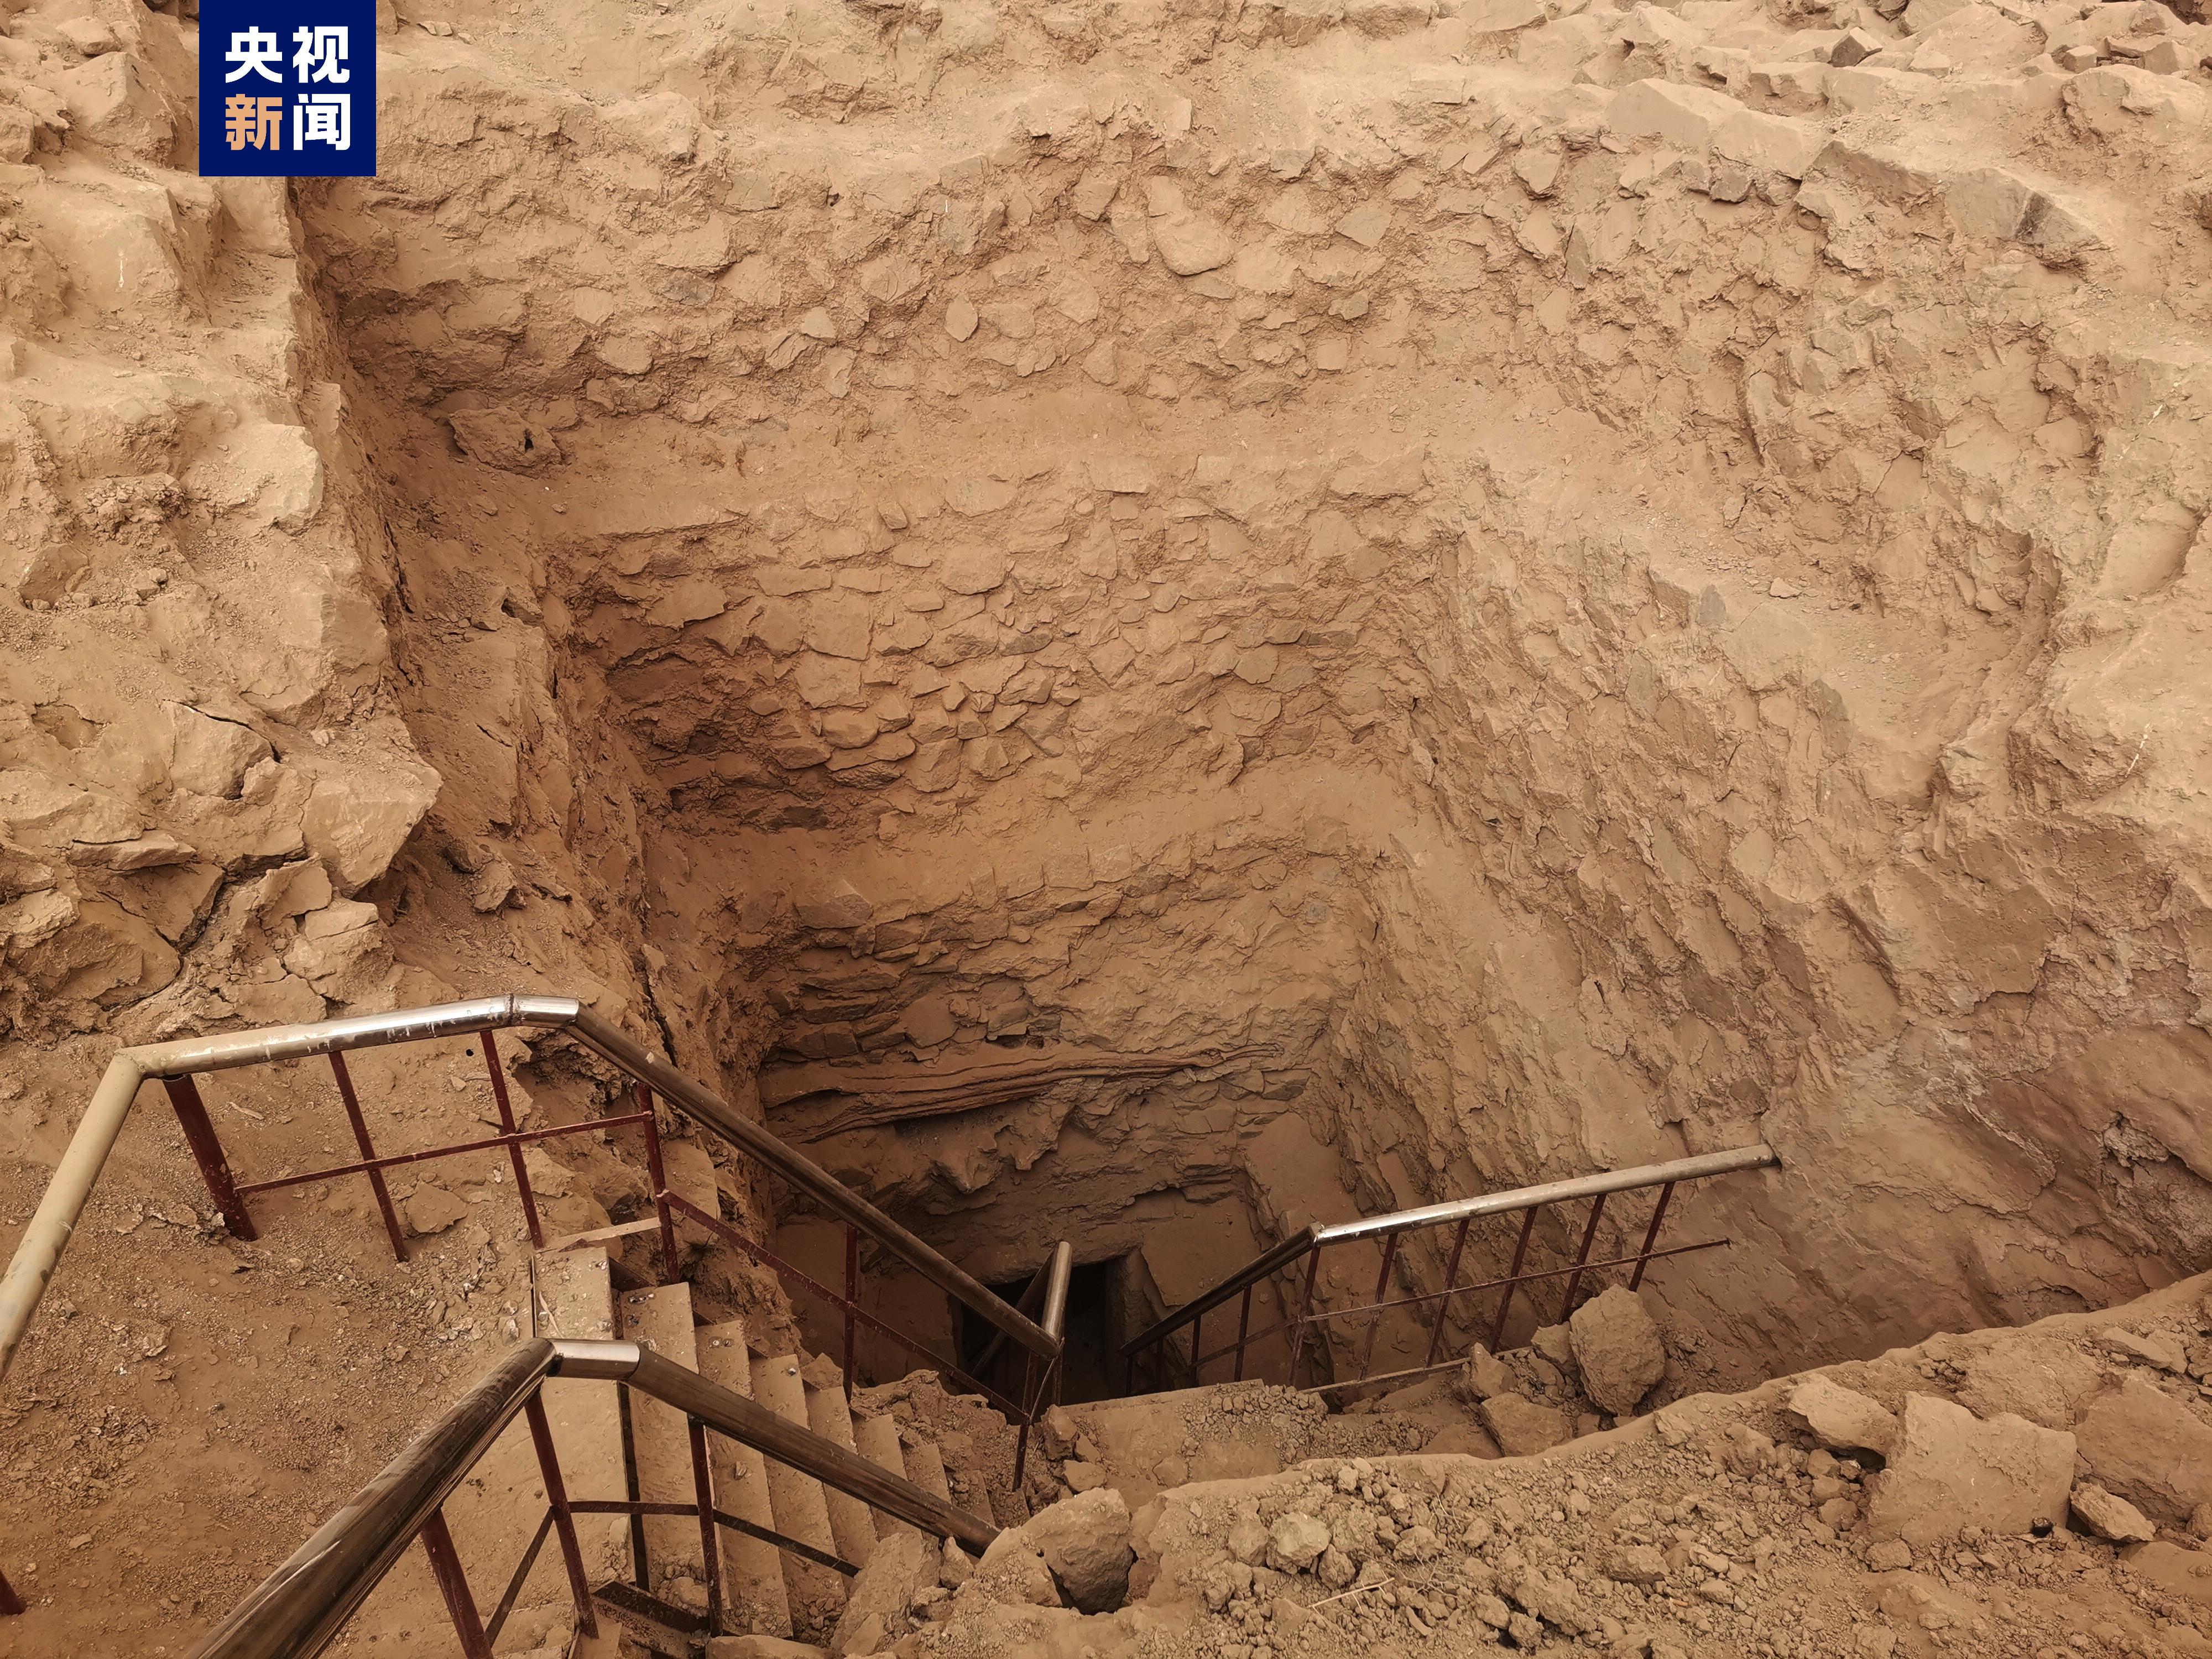 青海都兰热水墓群2007qm1墓园清理发掘工作已经完成 